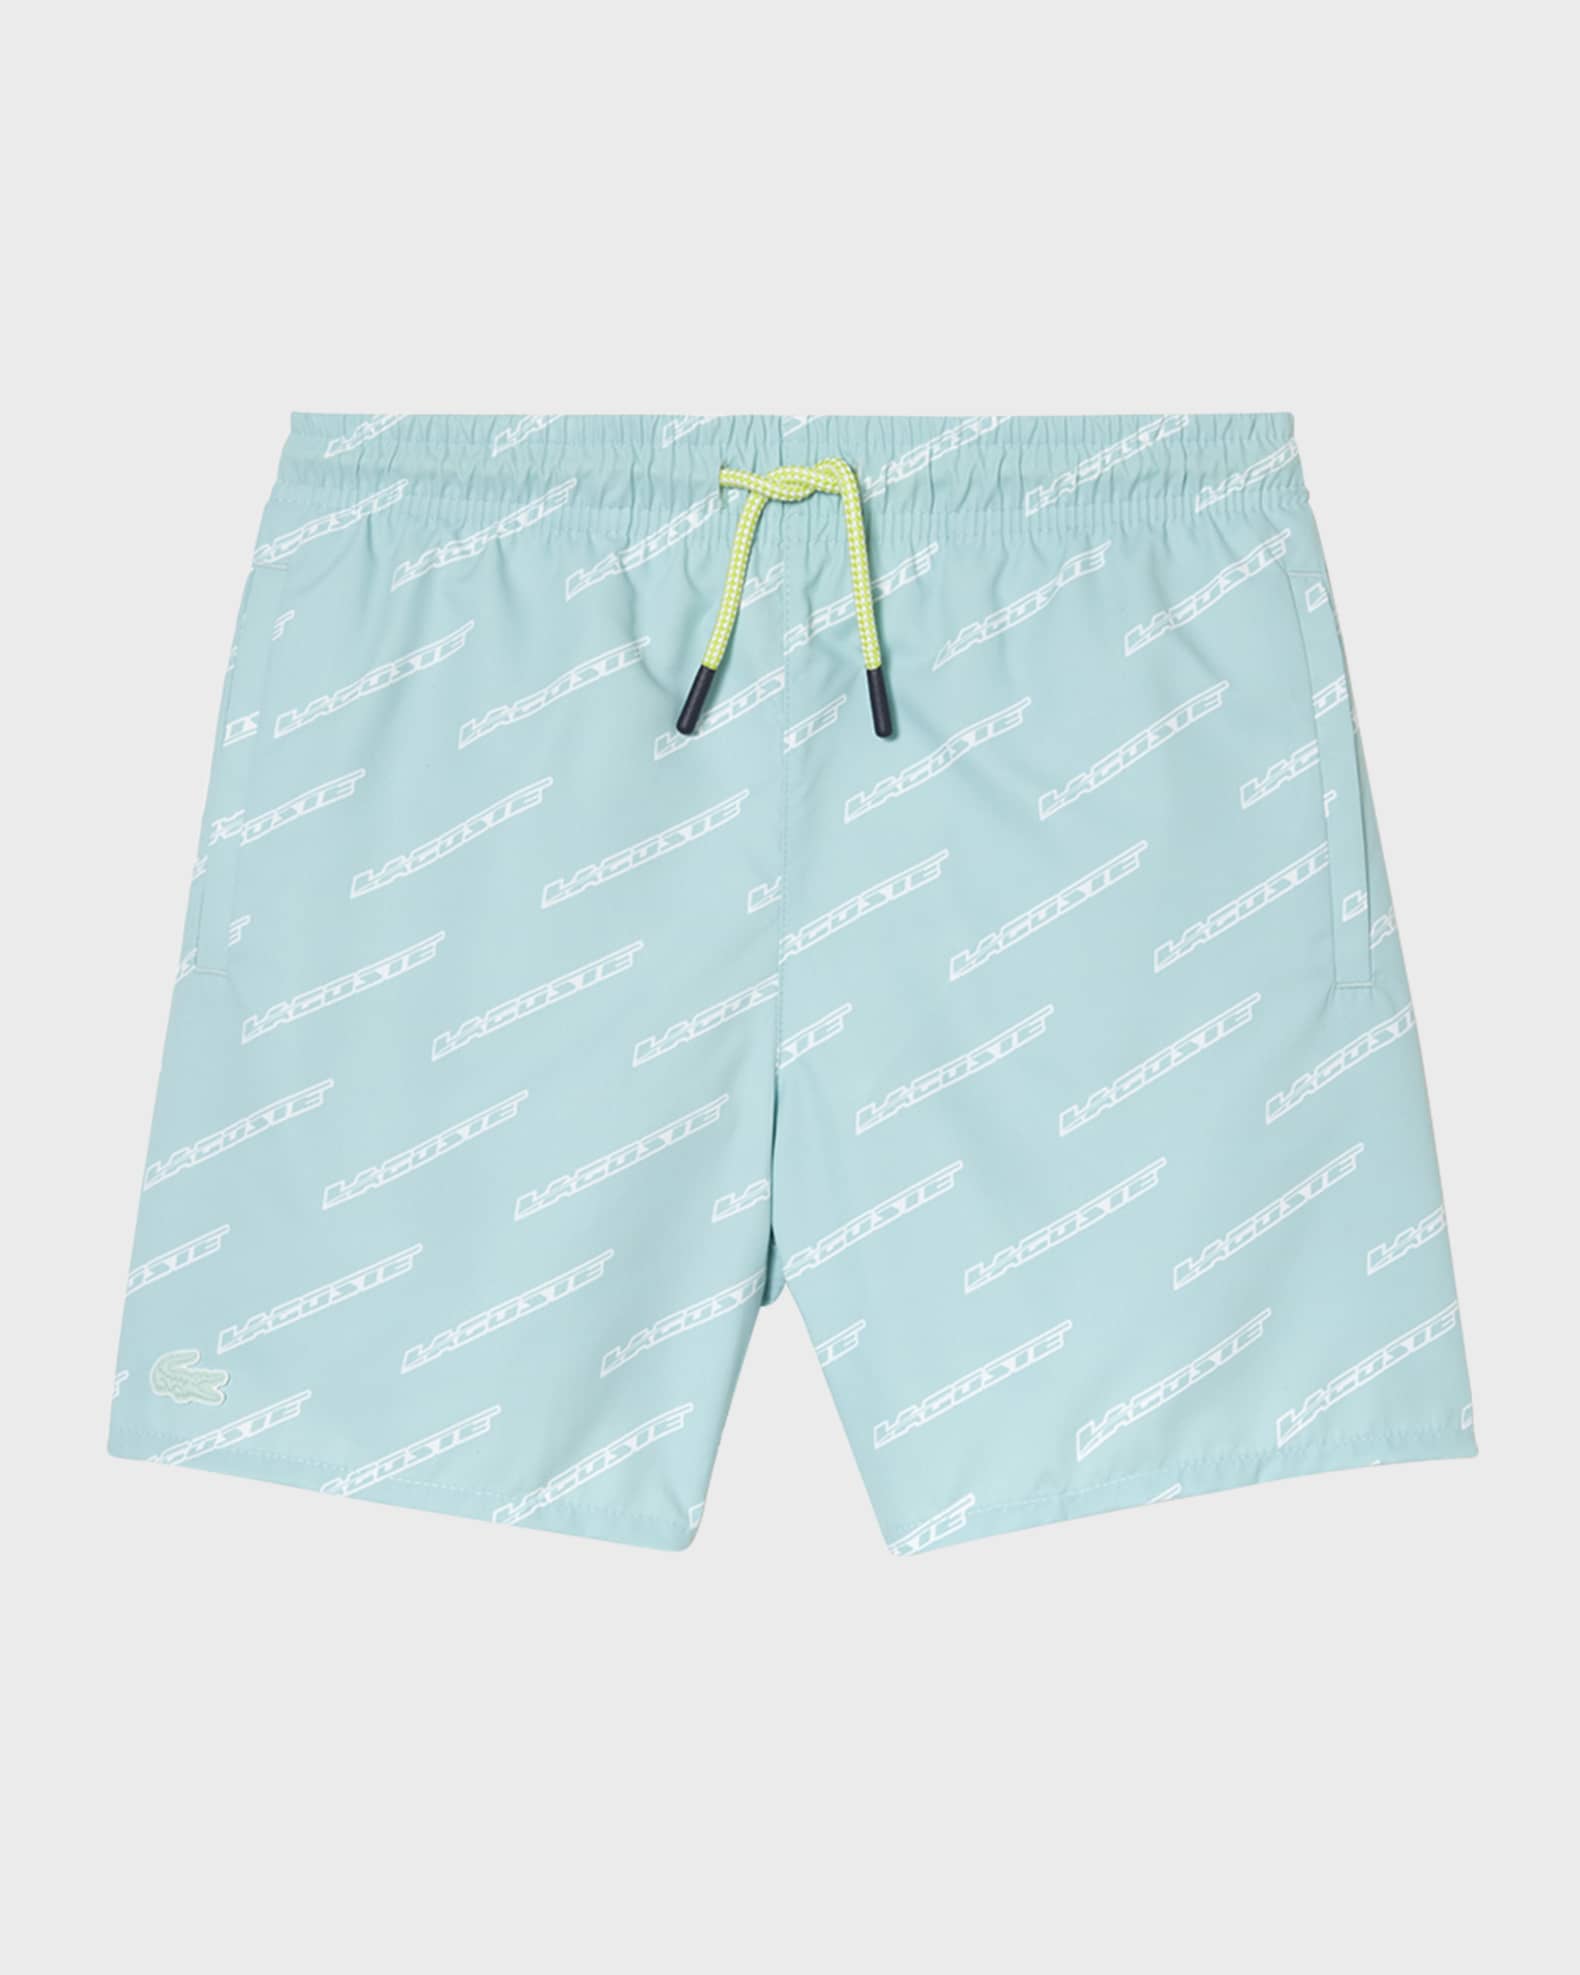 All-over logo print swim trunks